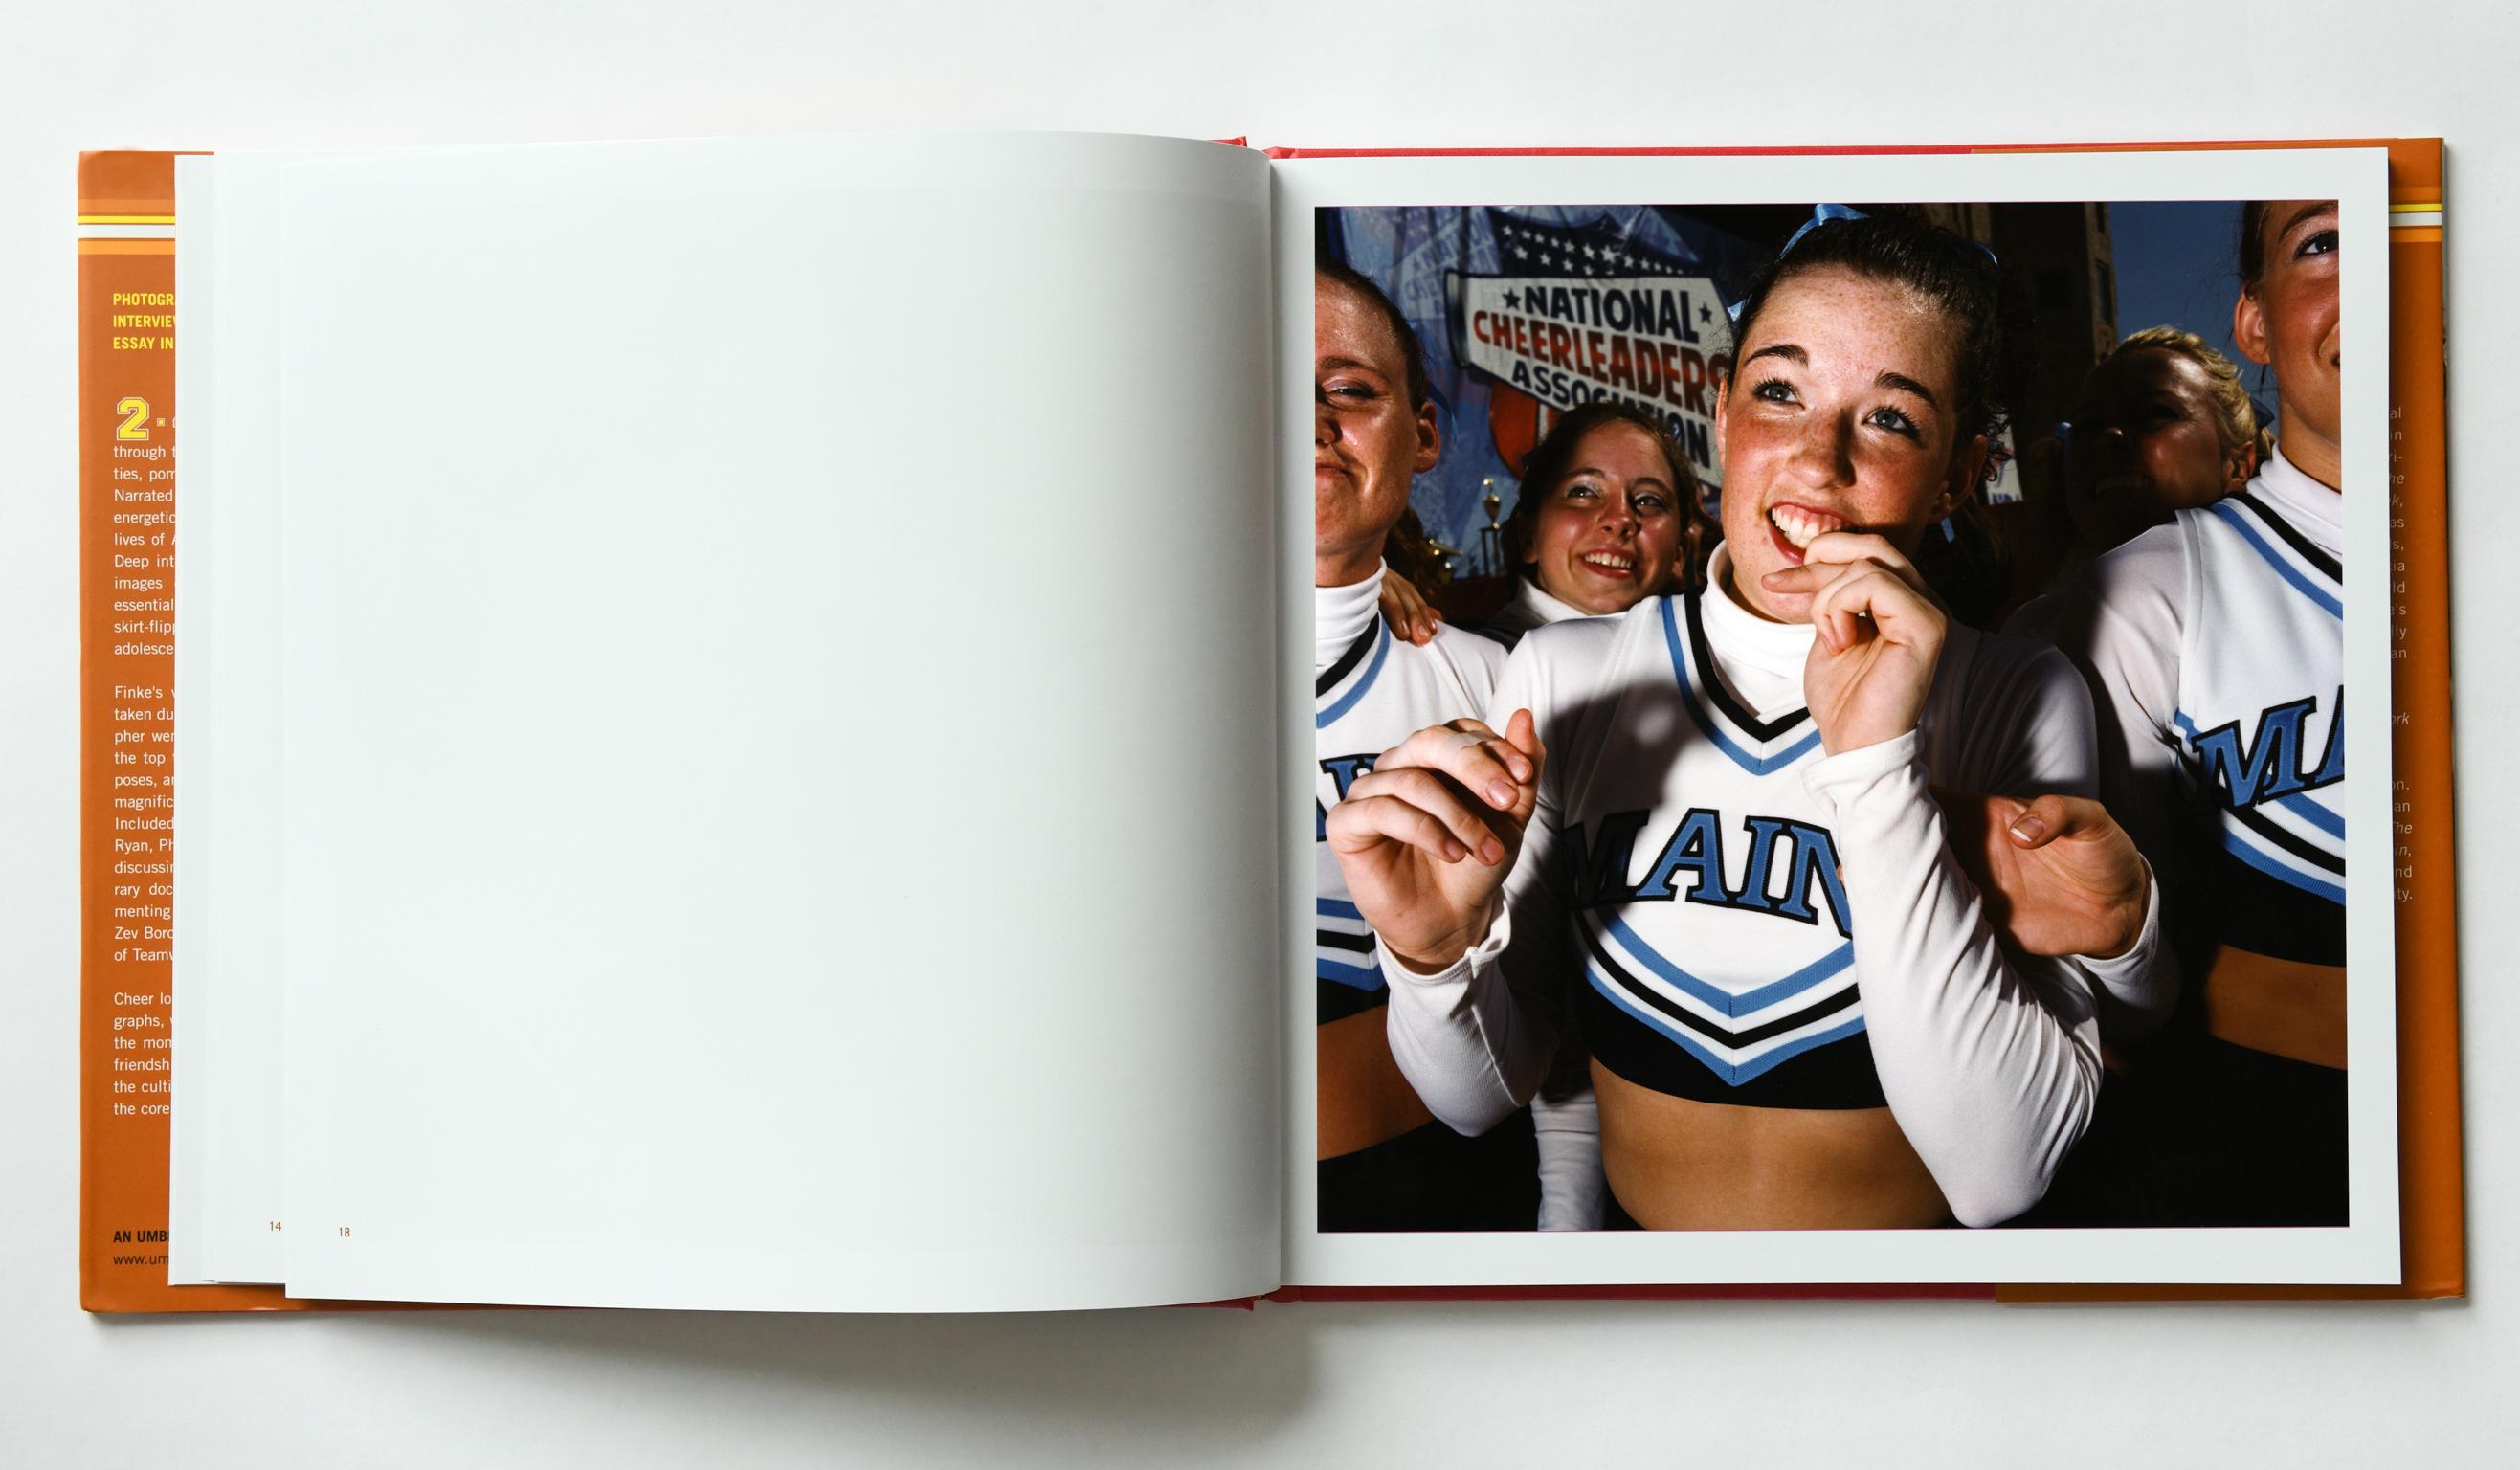 2.4.6.8 : Cheerleaders et footballeurs américains 
Umbrage Editions, 2003
128 pages, 10.25 x 10.25 in
65 photographies en couleur
Signé, 125

La première monographie de Brian Finke, 2-4-6-8 : American Cheerleaders & Football Players.

Pendant